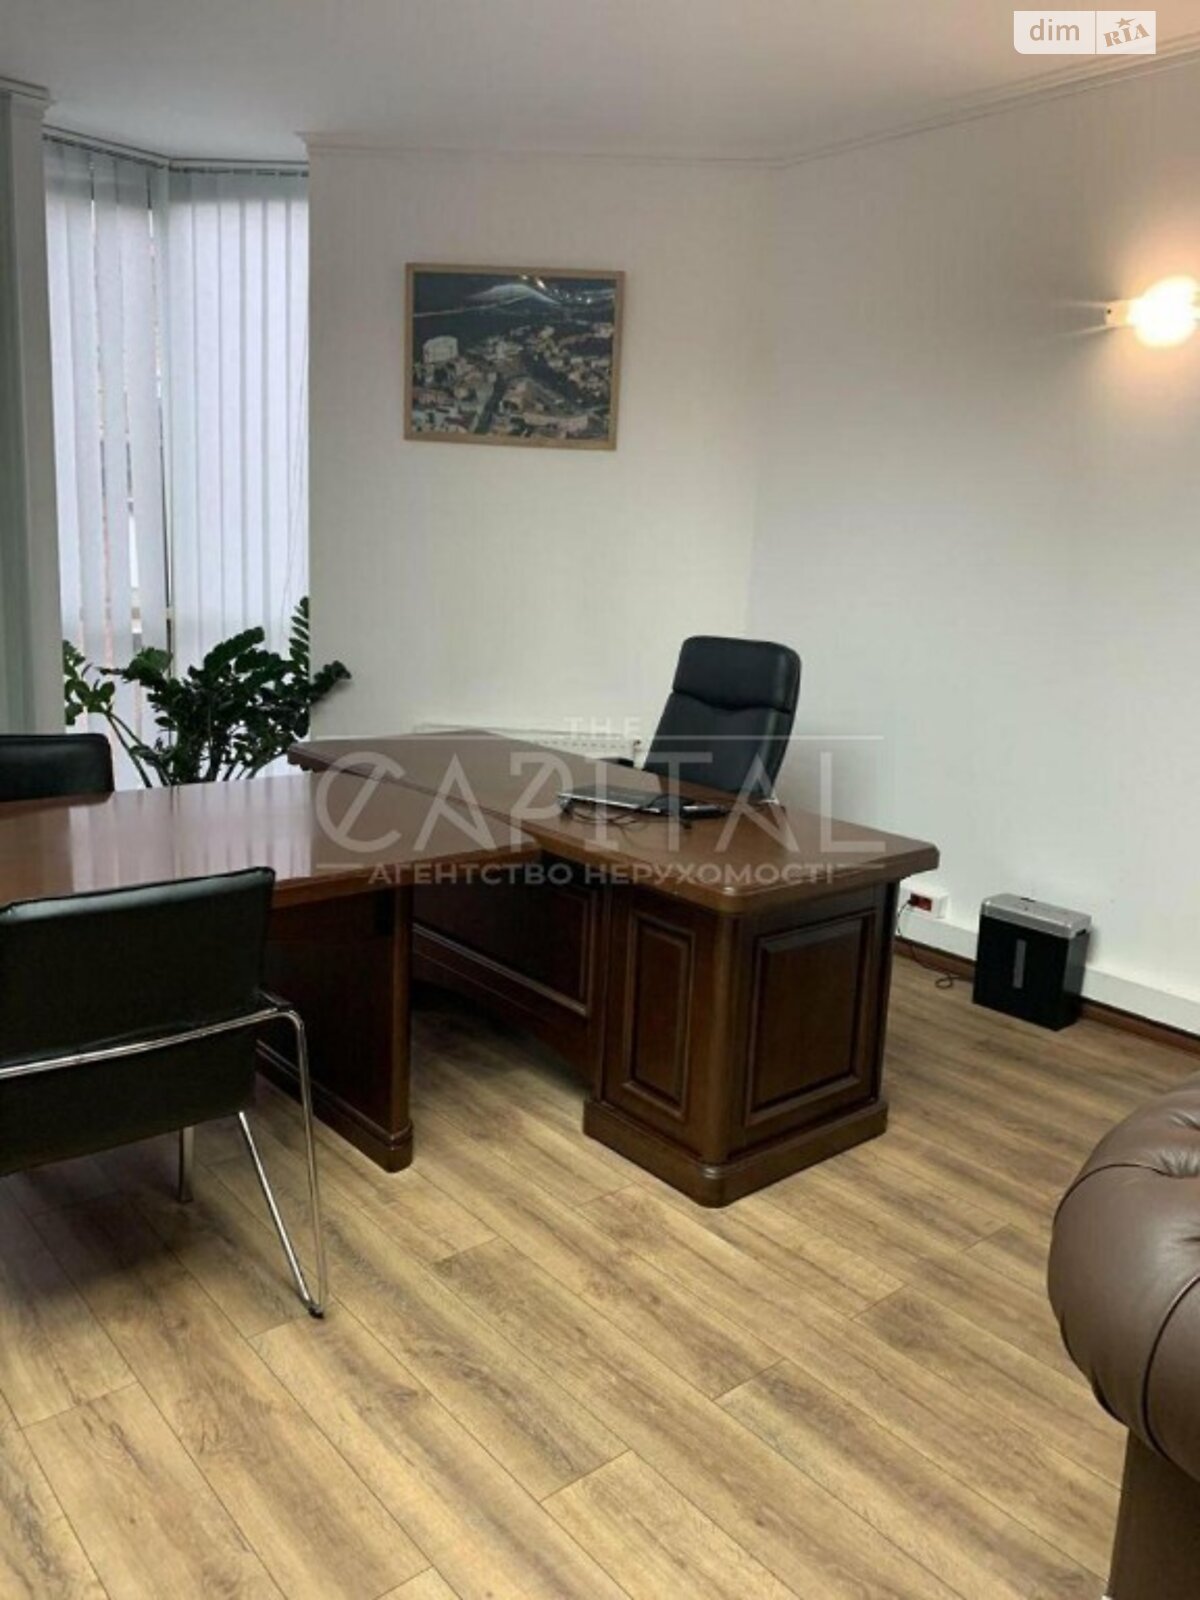 Аренда офисного помещения в Киеве, Крутой спуск 13, помещений - 5, этаж - 3 фото 1